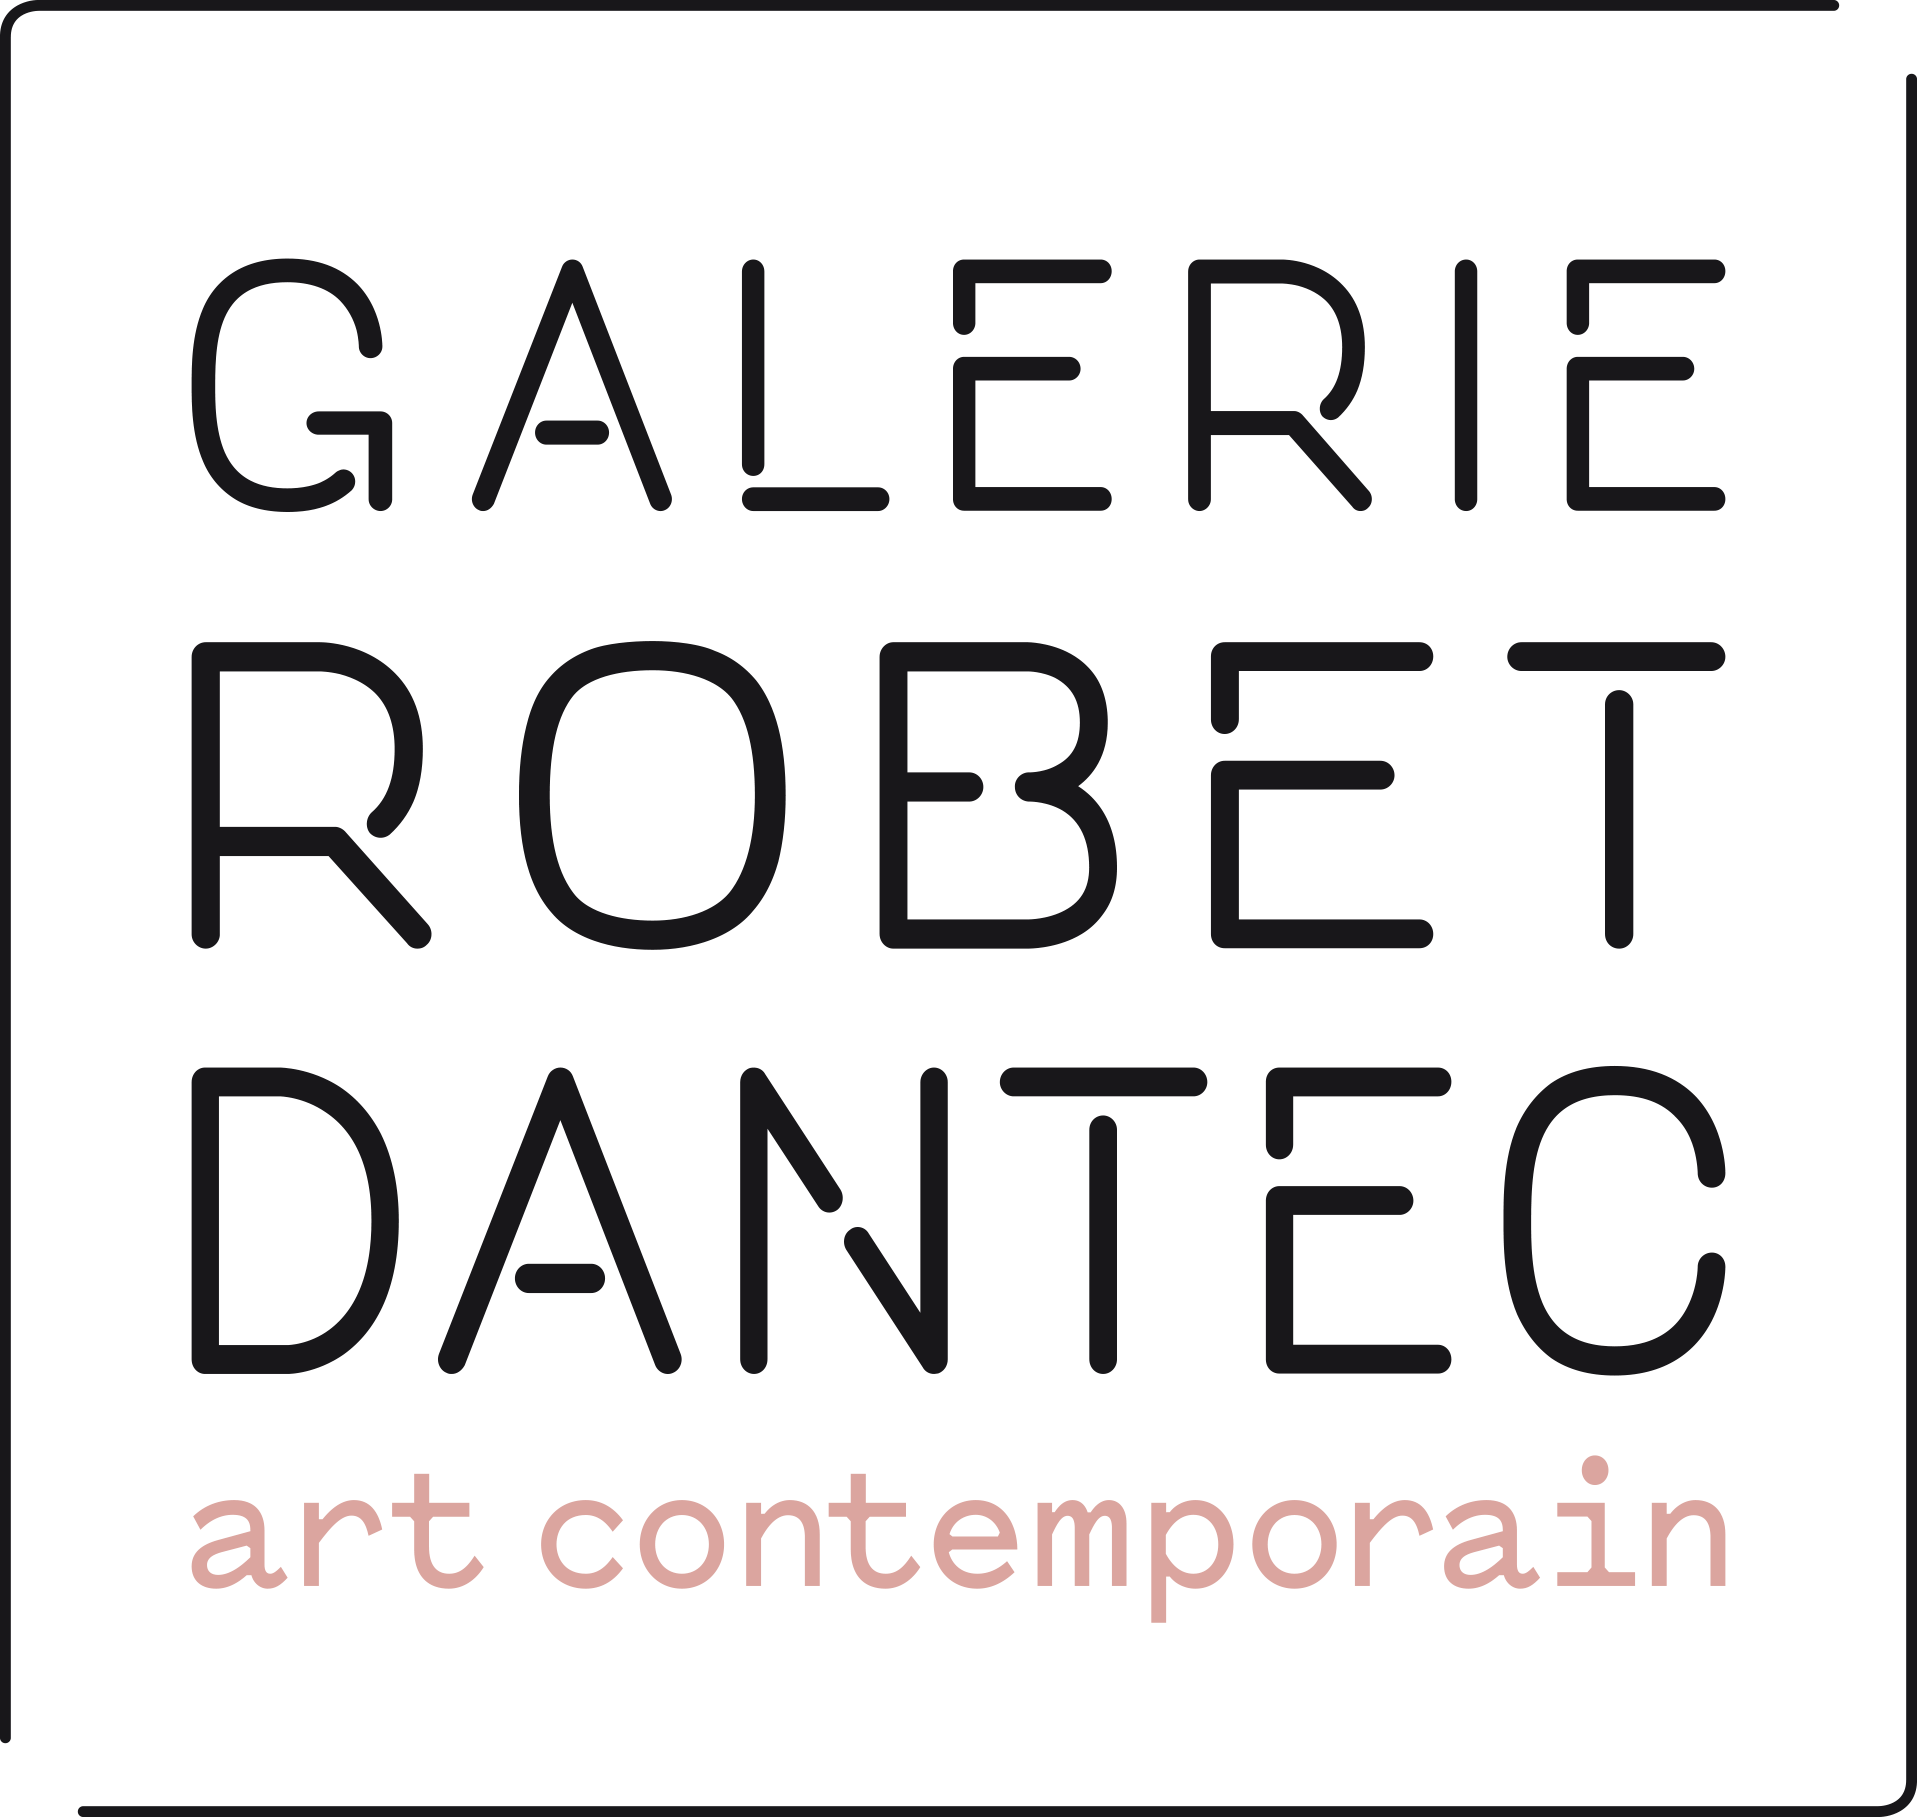 Galerie Robet Dantec